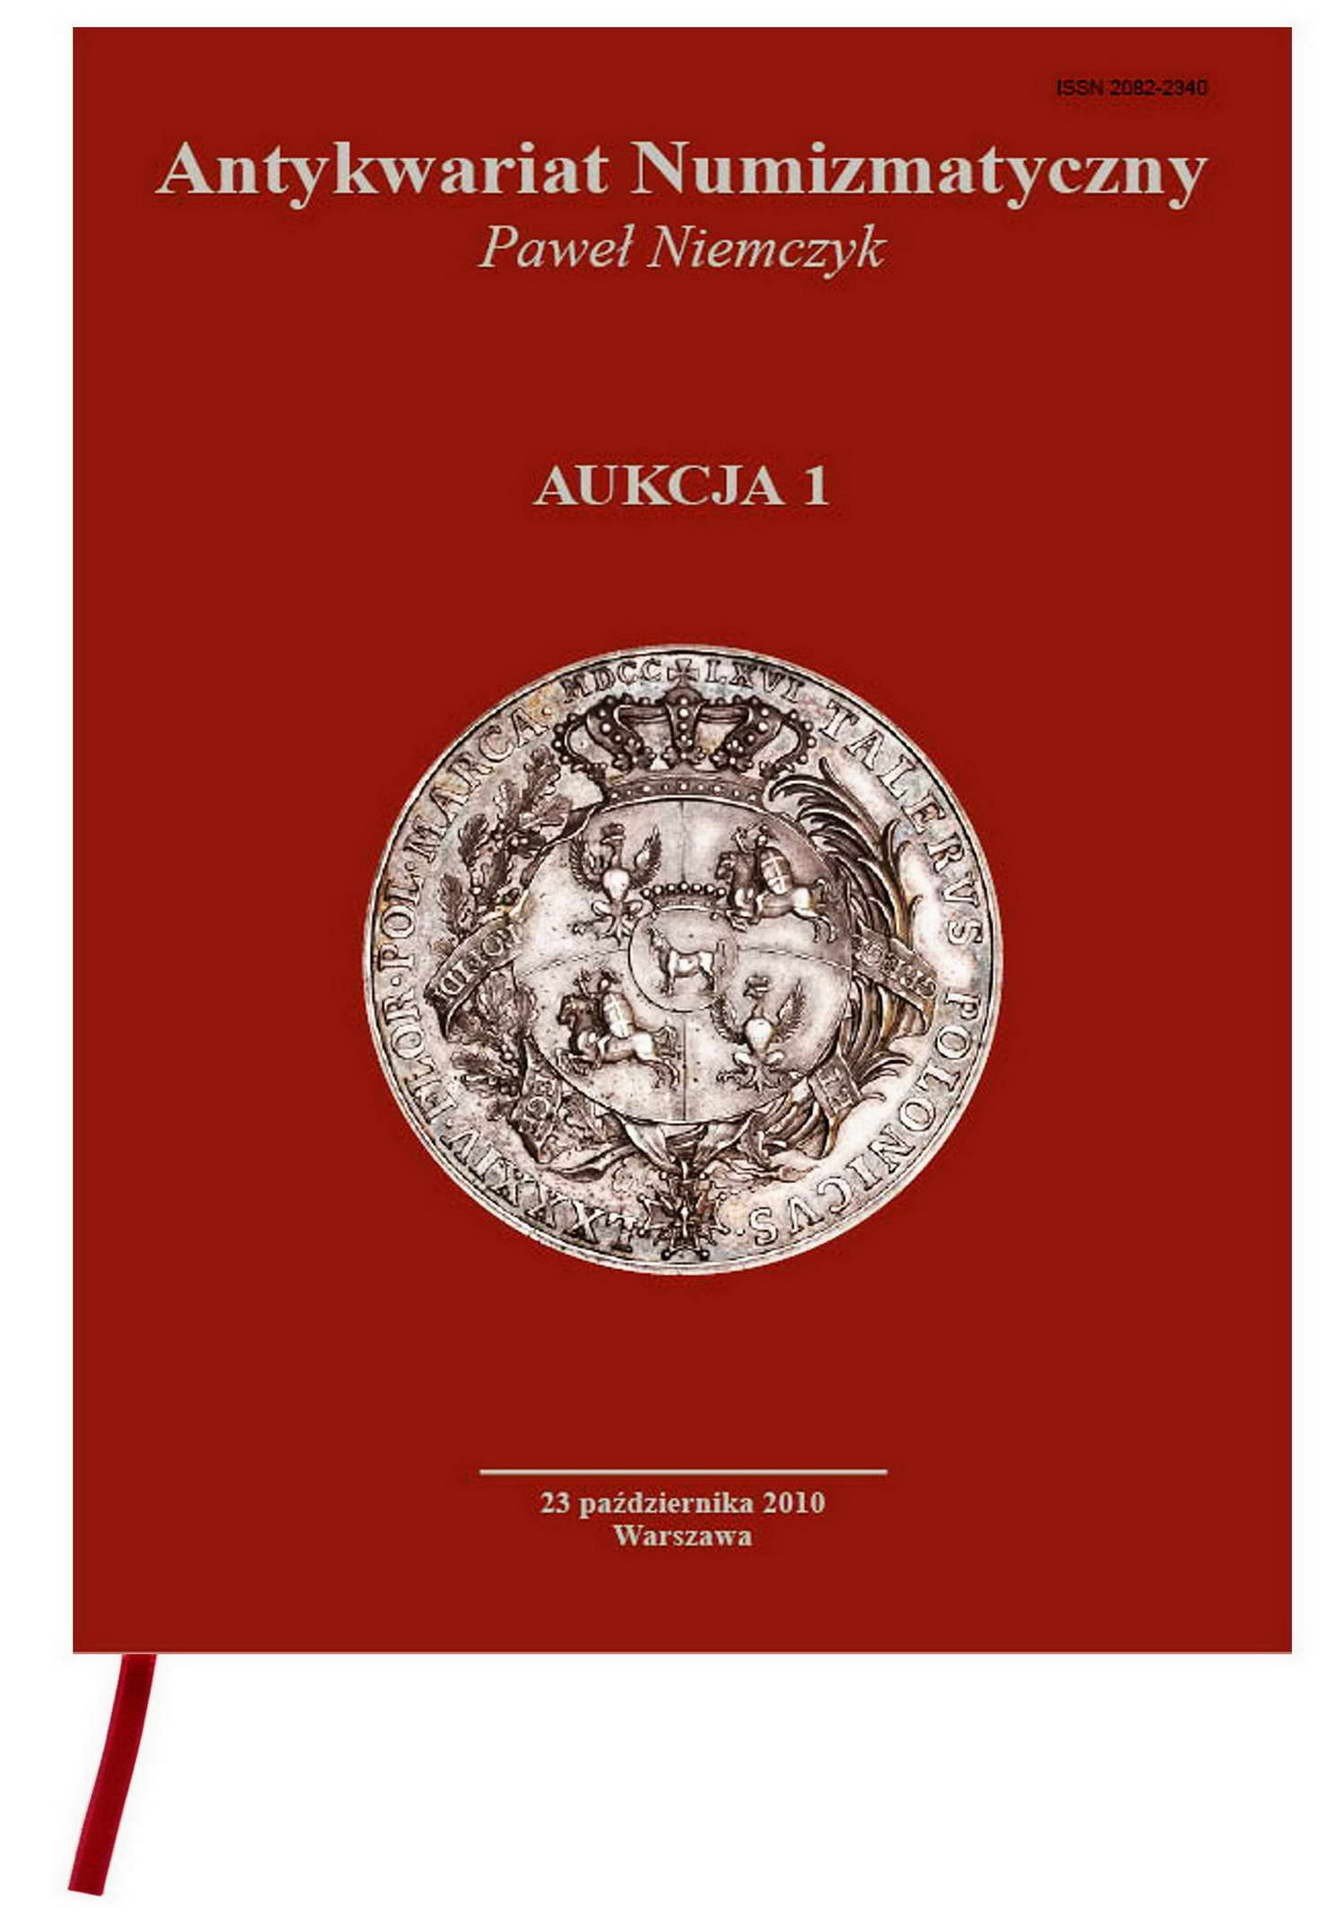 Katalog aukcyjny AUKCJA 1 Antykwariat Numizmatyczny Paweł Niemczyk